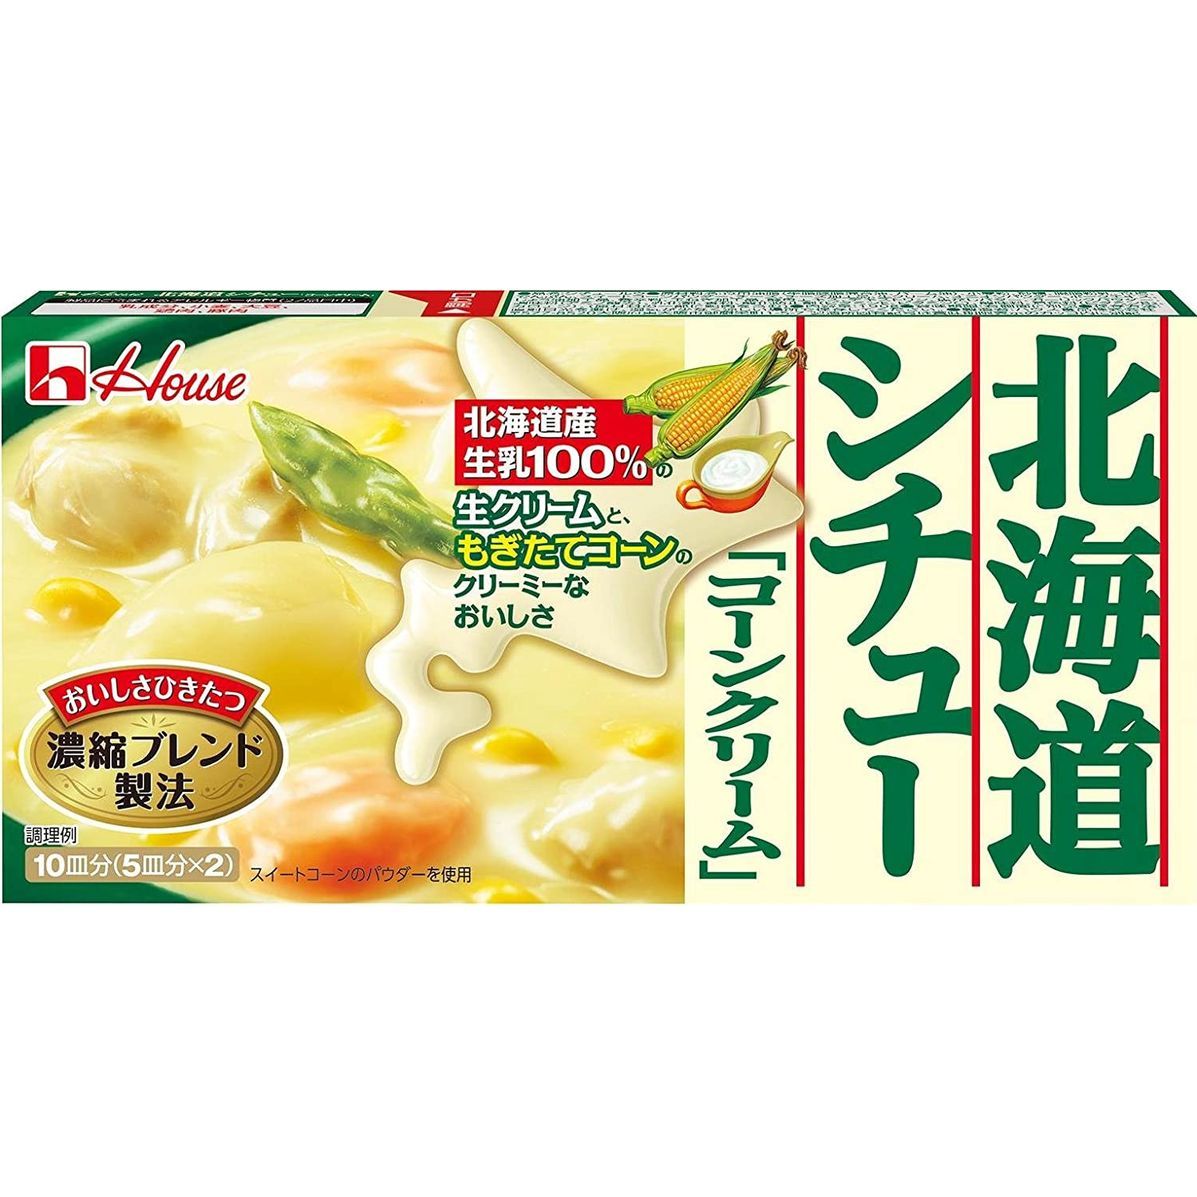 ハウス食品 ハウス食品 北海道シチュー コーンクリーム 180g×1個 シチュールーの商品画像